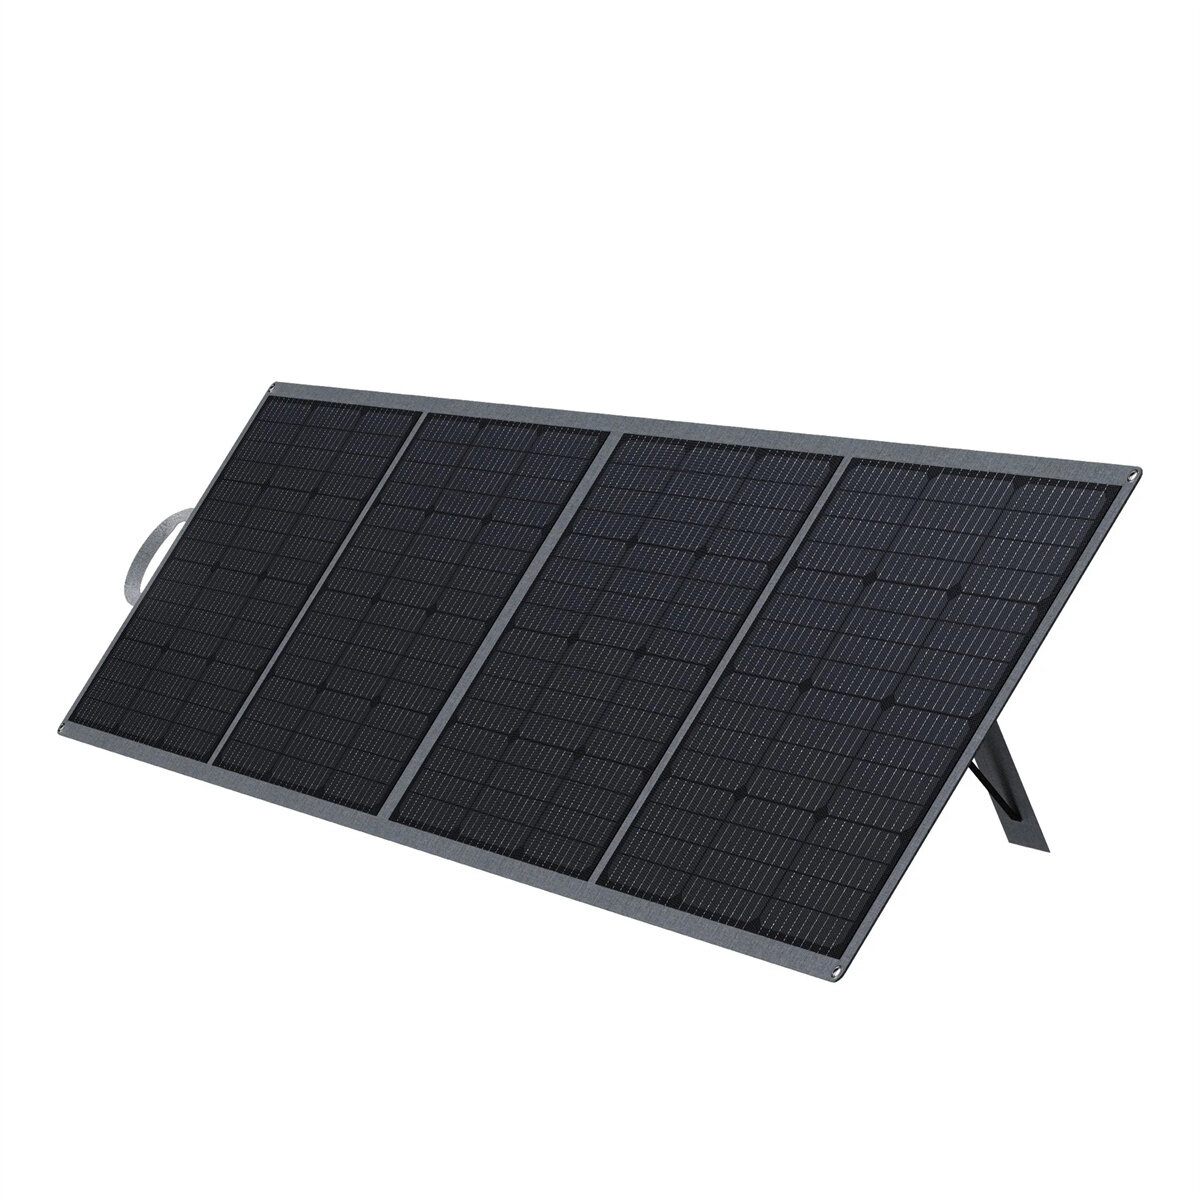 [EU Direct] DaranEner SP300 Painel Solar ETFE 300W para Gerador Solar NEO2000 Painéis Solares 5V USB＆36.3V DC 22.0% Eficiência Painel Solar Portátil Dobrável para Pátio, RV, Camping ao Ar Livre, Apagões, Emergências